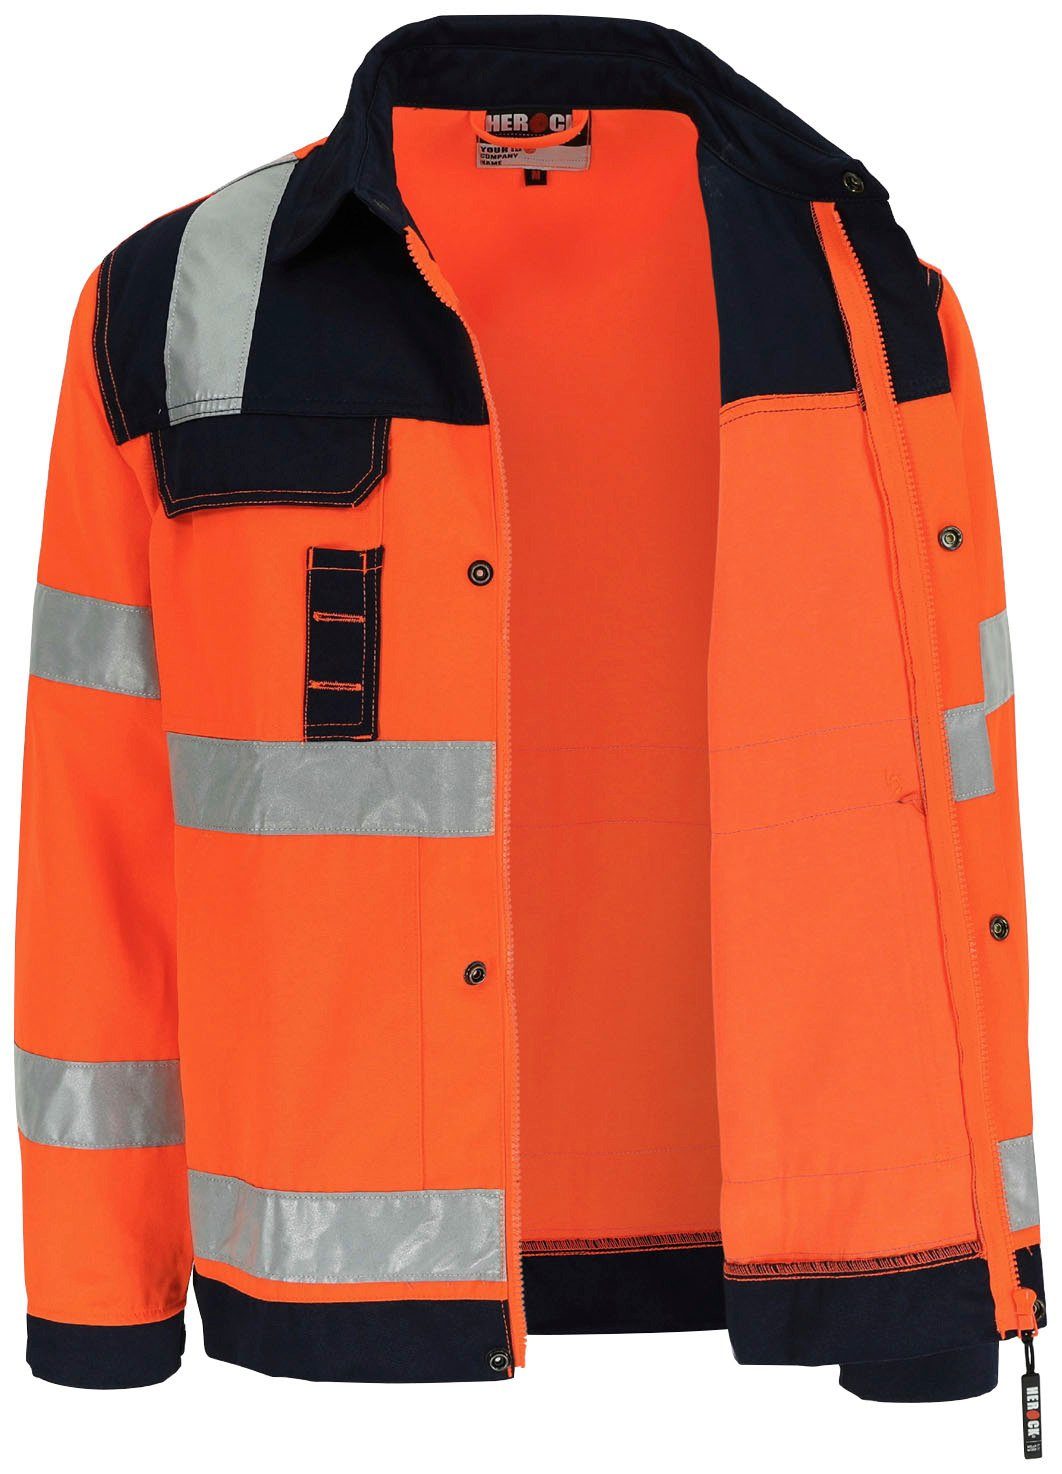 Arbeitsjacke Bündchen, Hochwertig, 5cm eintellbare Hochsichtbar Taschen, orange 5 reflektierende Hydros Bänder Jacke Herock